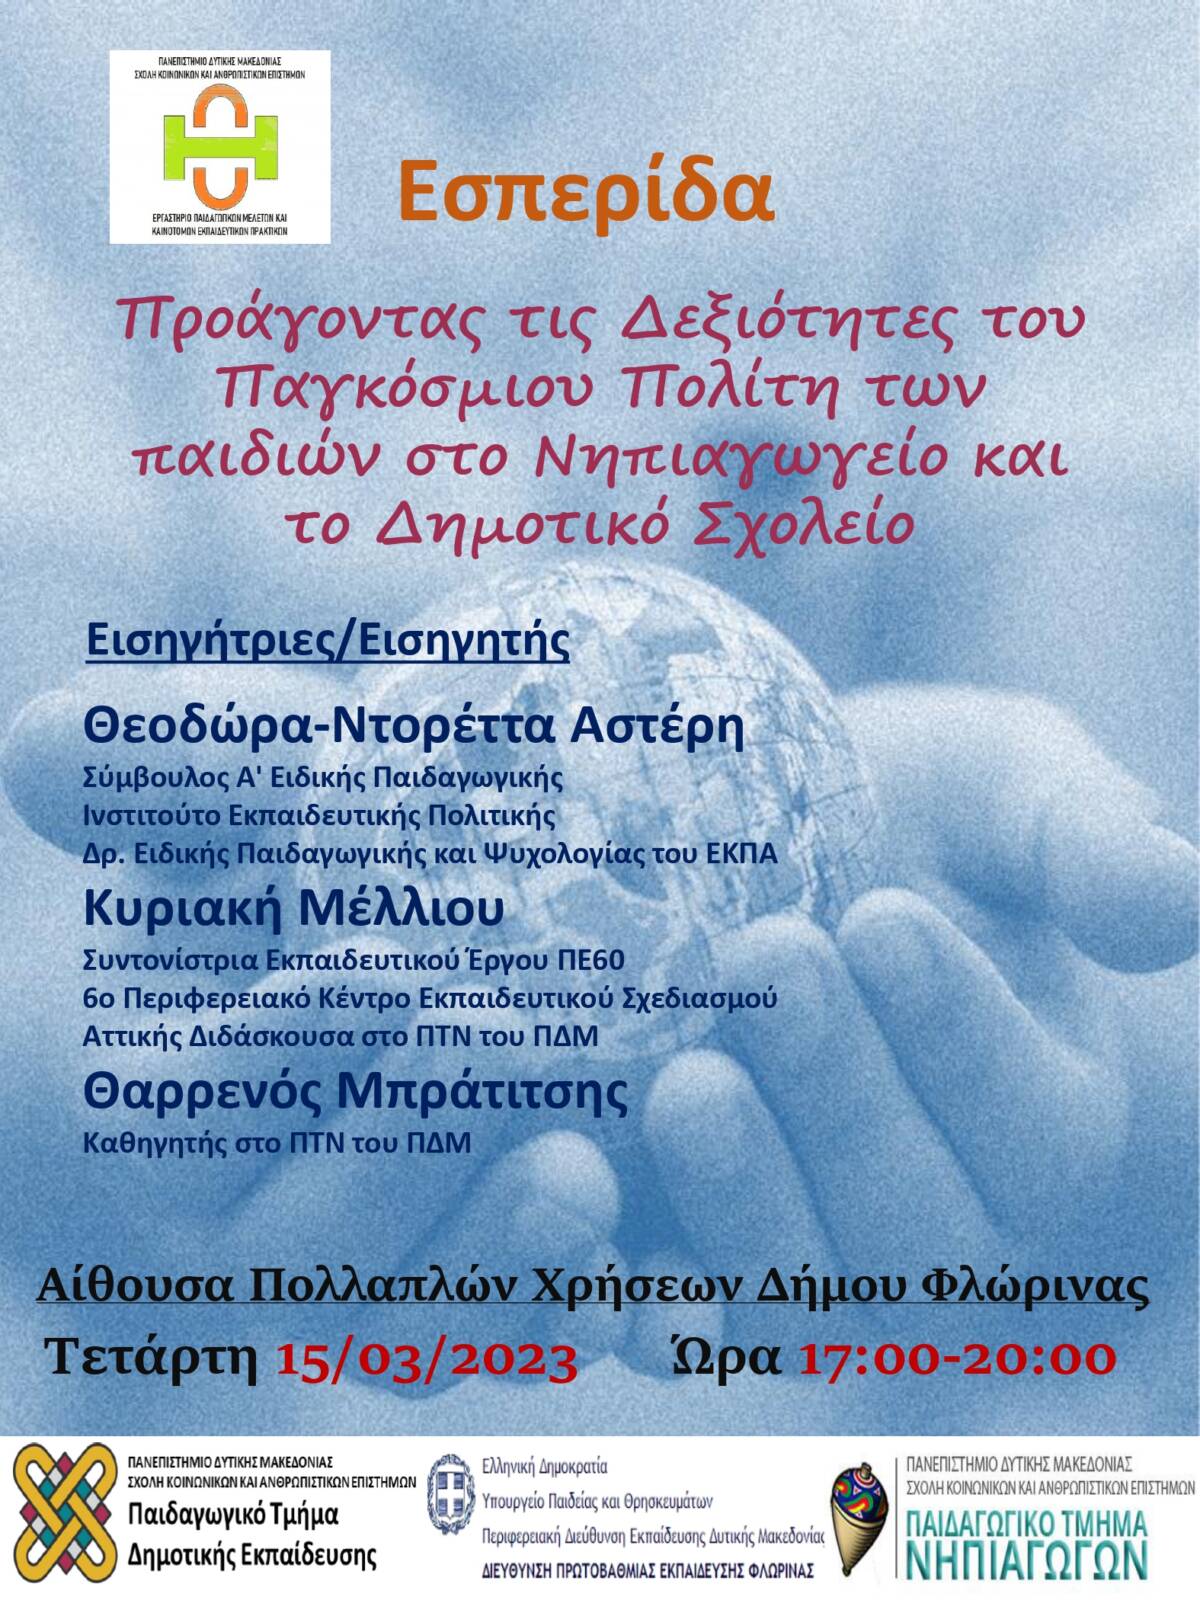 Πανεπιστήμιο Δυτικής Μακεδονίας: Εσπερίδα με θέμα «Προάγοντας τις Δεξιότητες του Παγκόσμιου Πολίτη των παιδιών στο Νηπιαγωγείο και το Δημοτικό Σχολείο», στη Φλώρινα